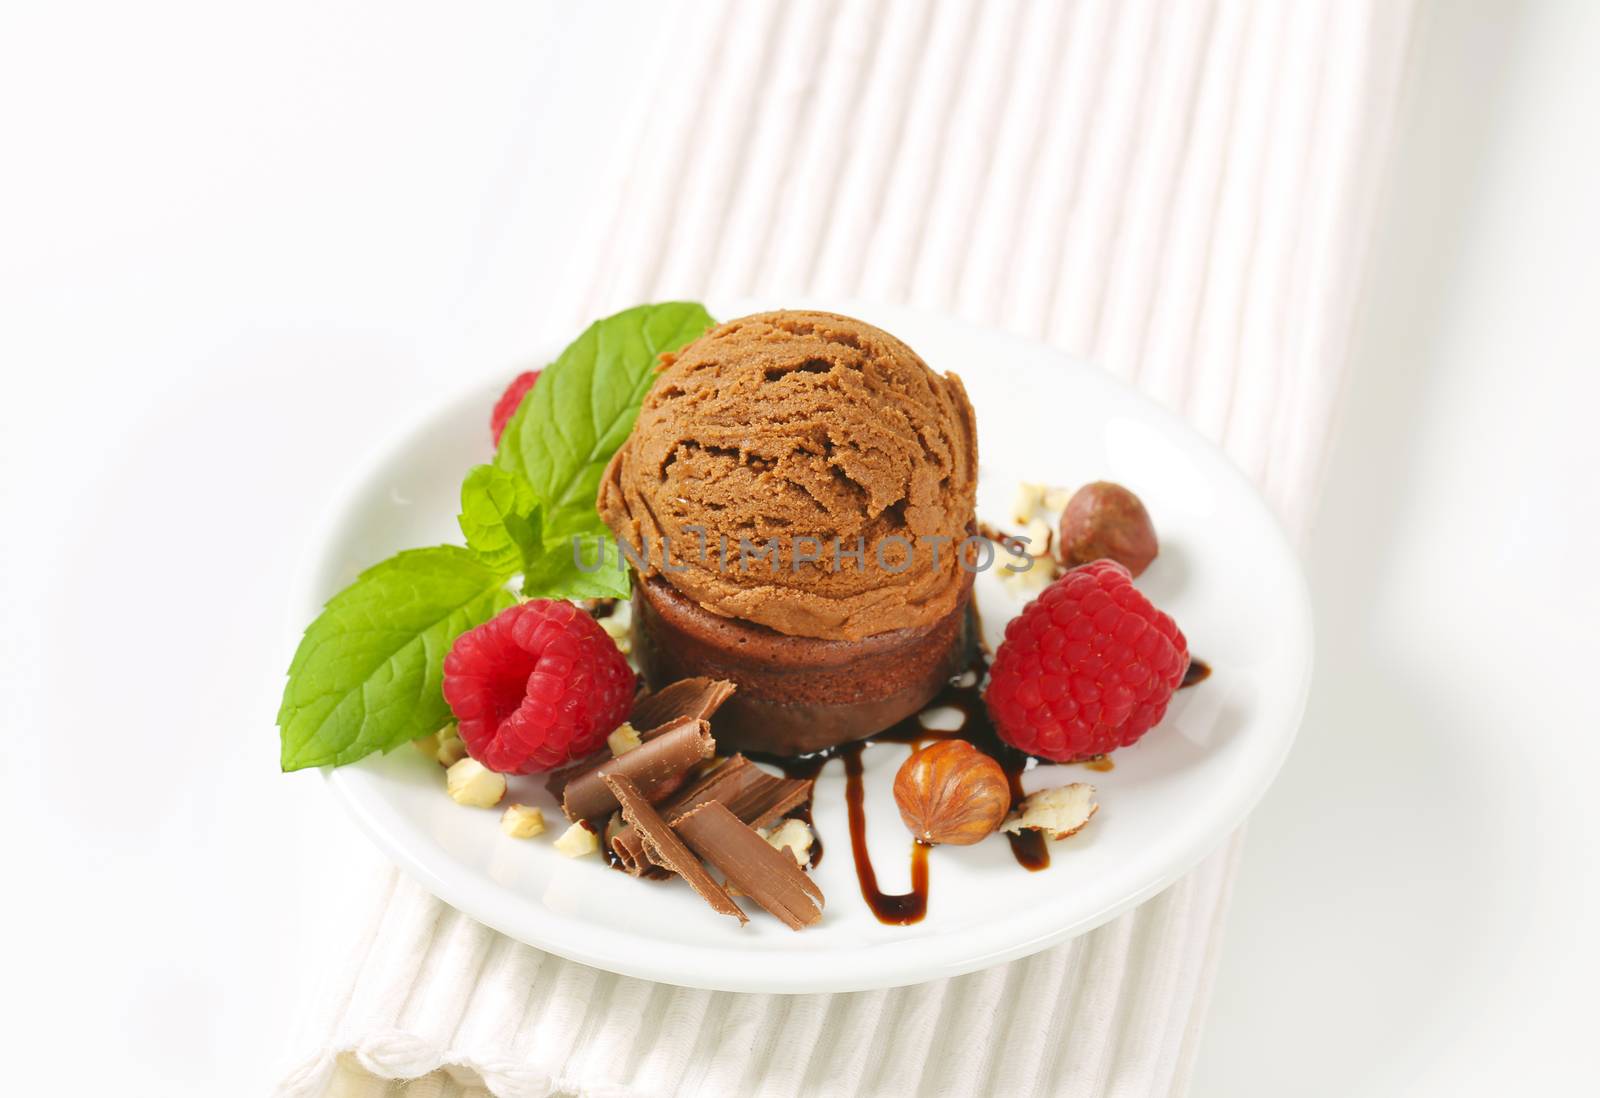 Mini chocolate hazelnut cake with ice cream by Digifoodstock